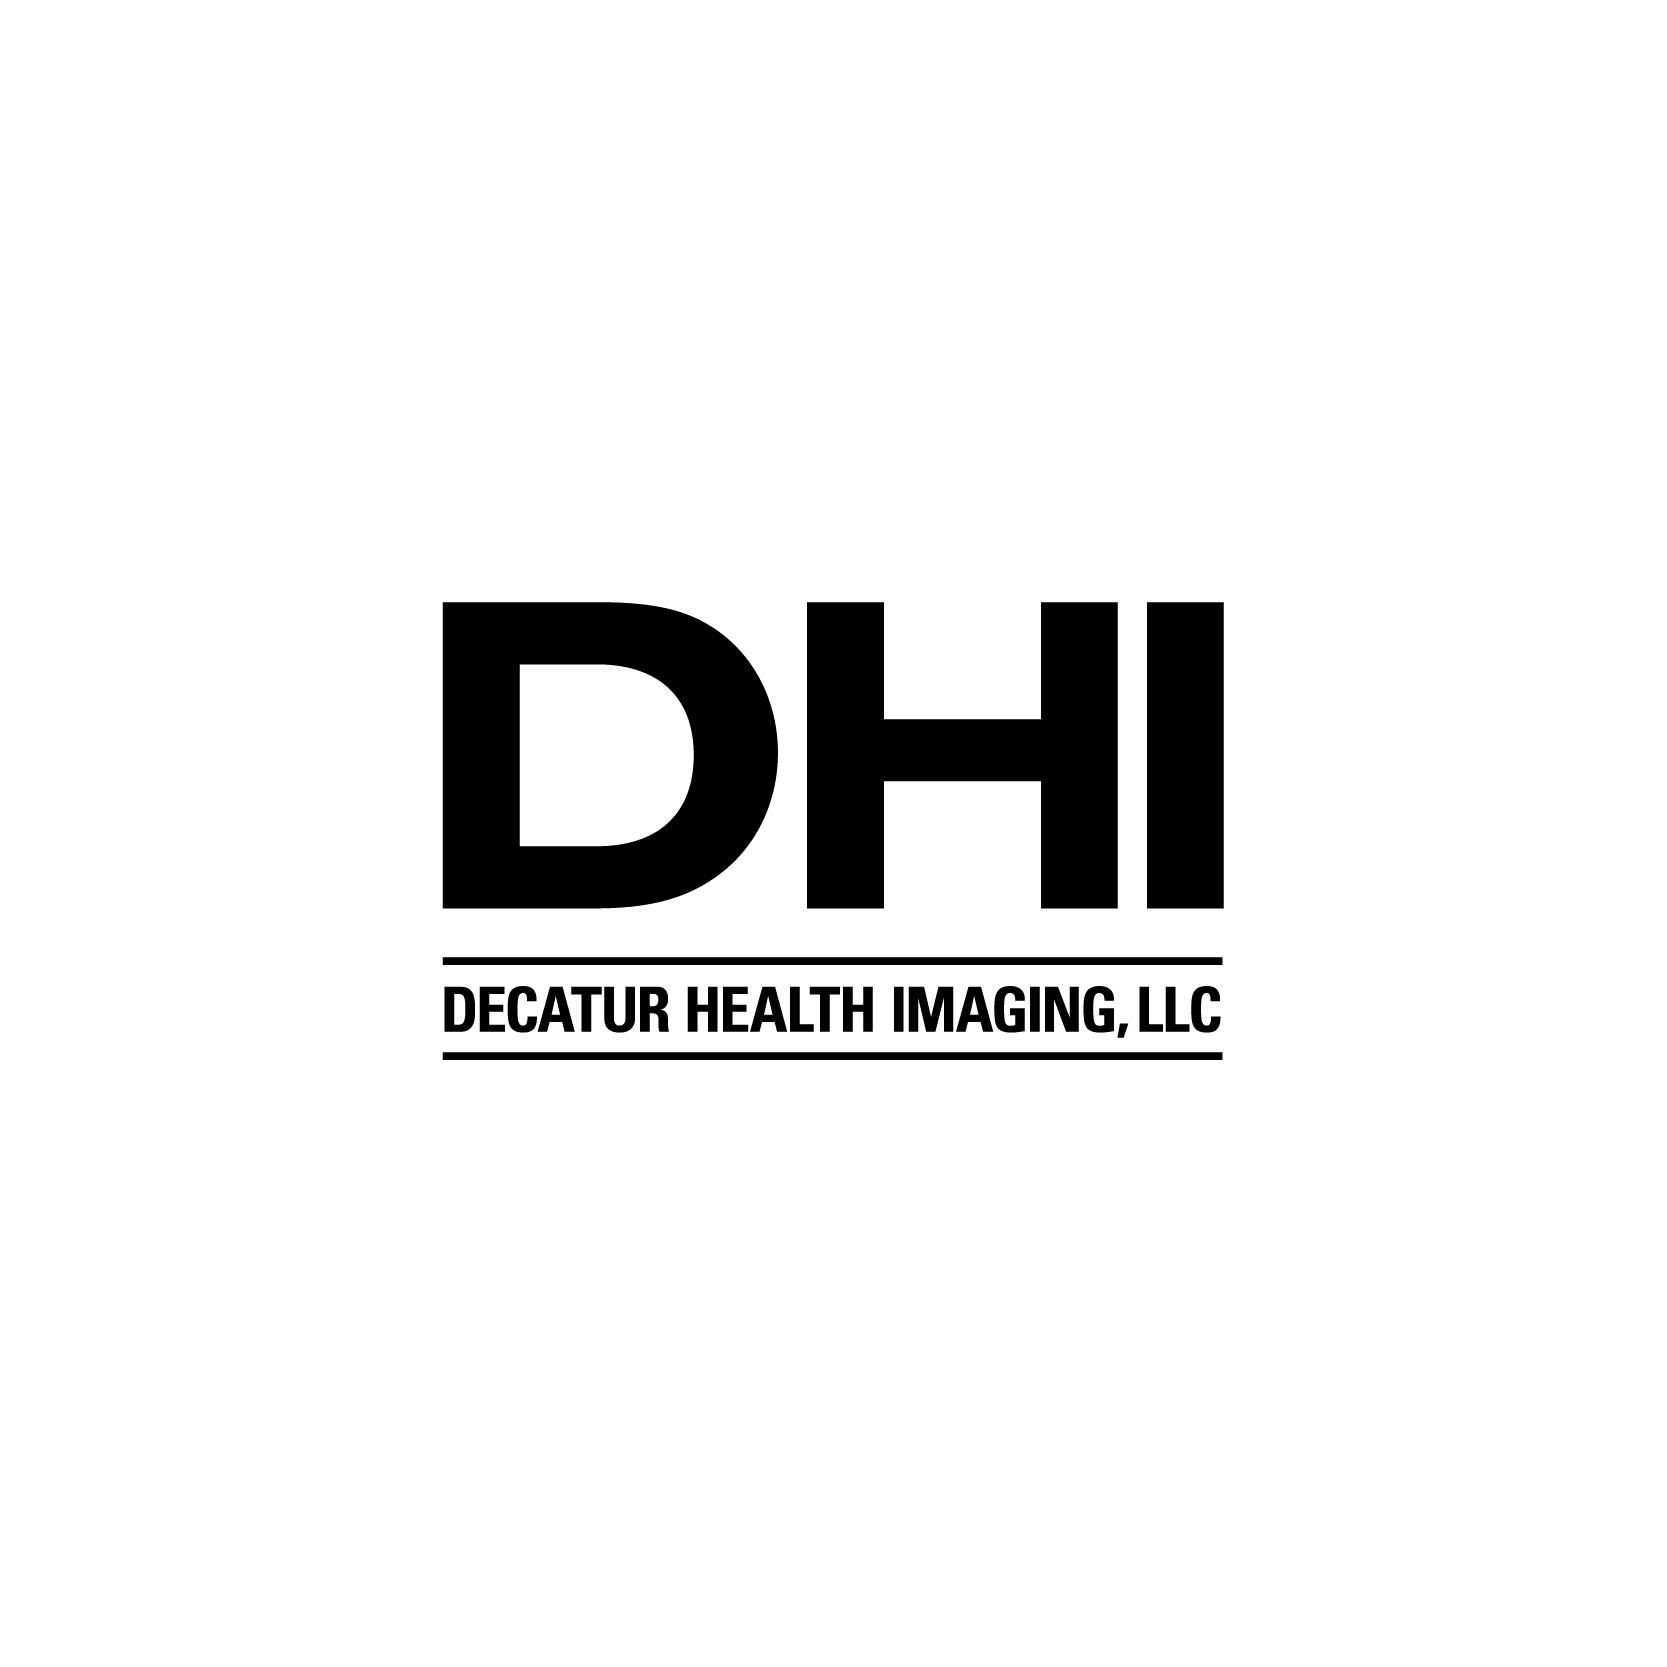 Decatur Health Imaging